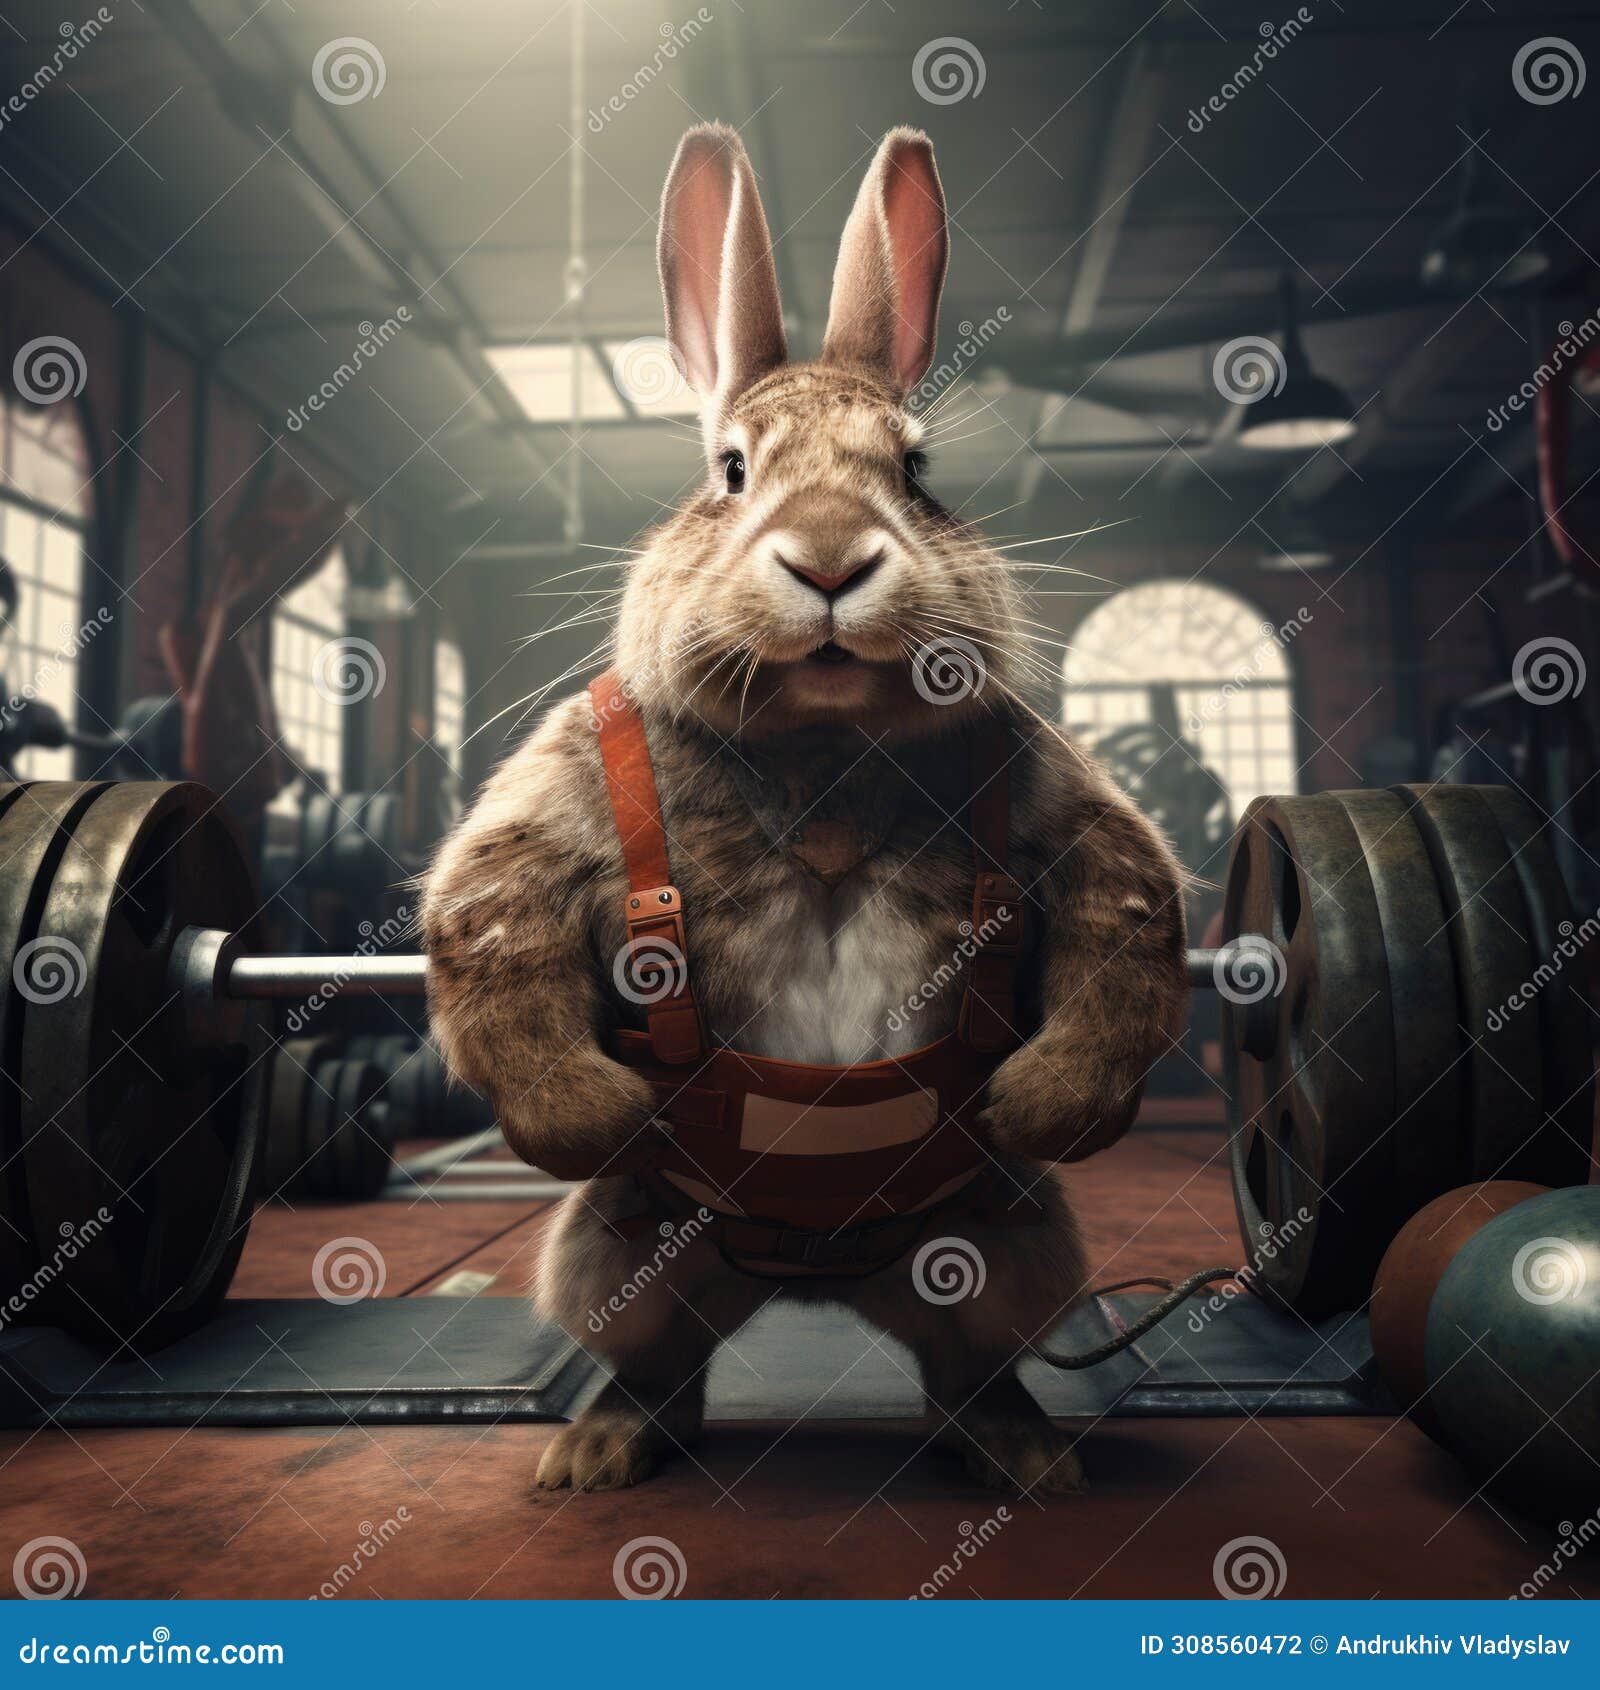 Bunny Exercising Stock Illustrations – 52 Bunny Exercising Stock  Illustrations, Vectors & Clipart - Dreamstime